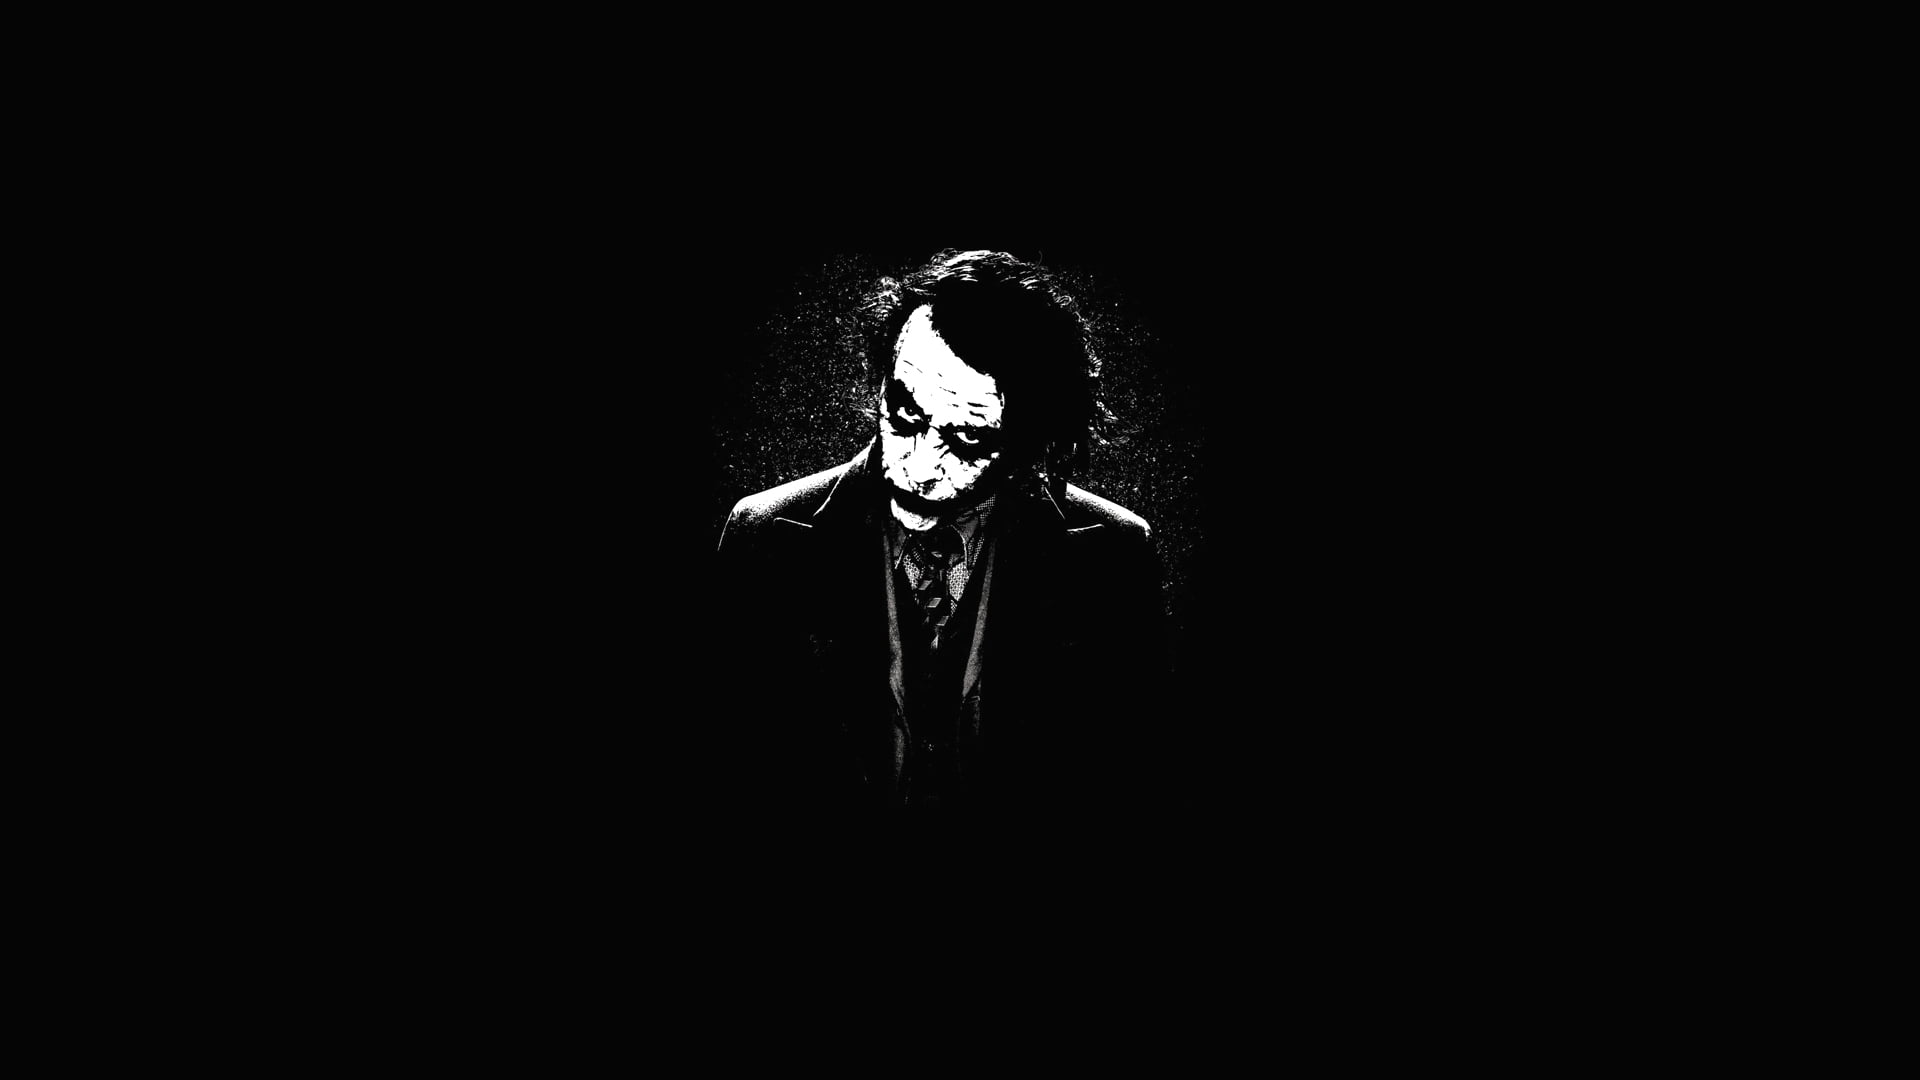 Màn hình đen kịt buồn Joker